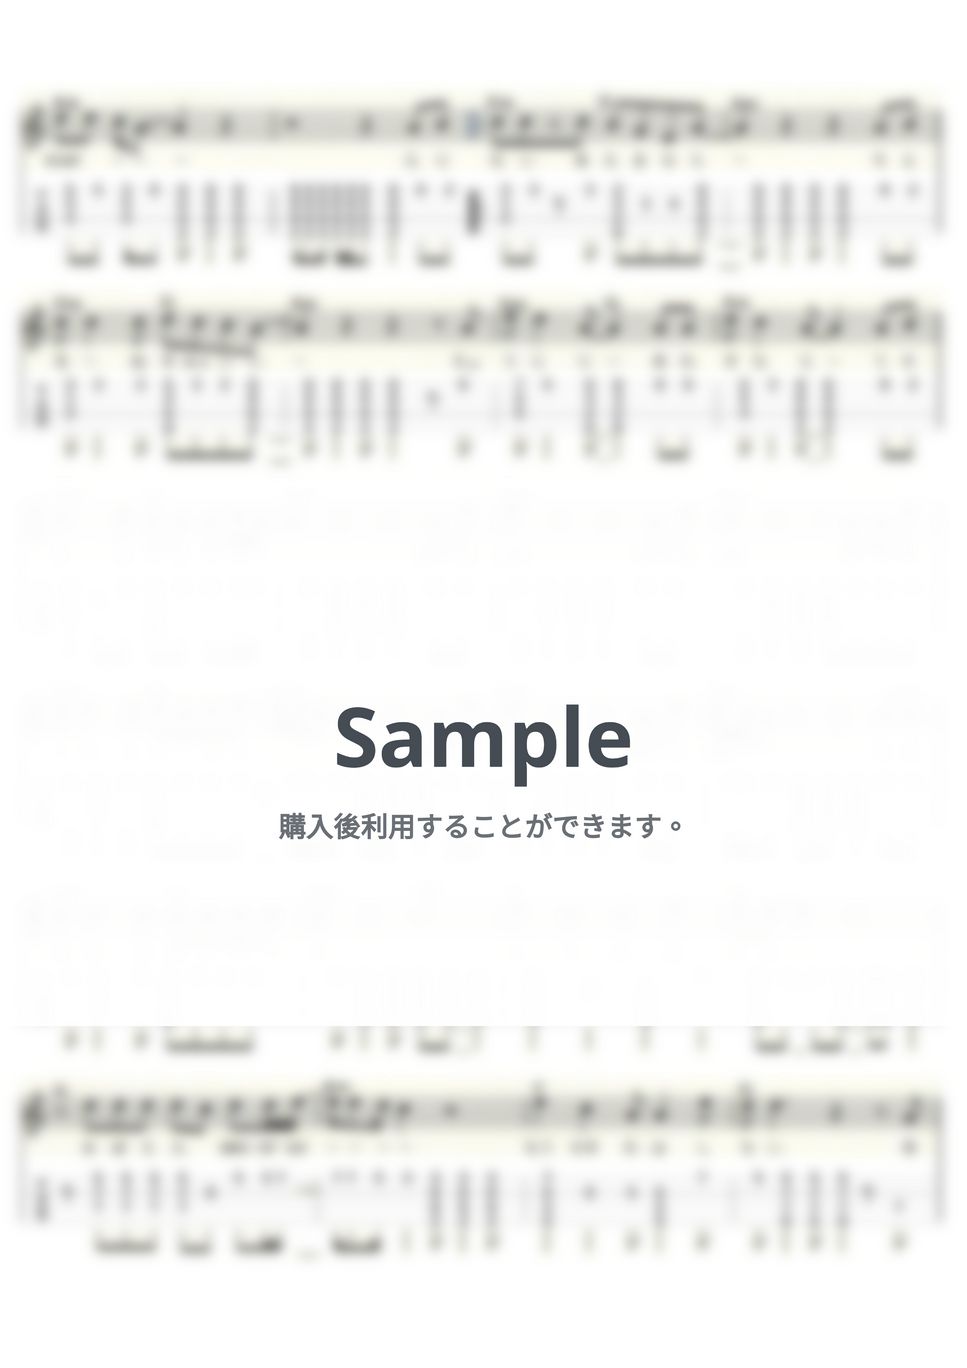 バブルガム・ブラザーズ - WON'T BE LONG (ｳｸﾚﾚｿﾛ / High-G・Low-G / 中級～上級) by ukulelepapa